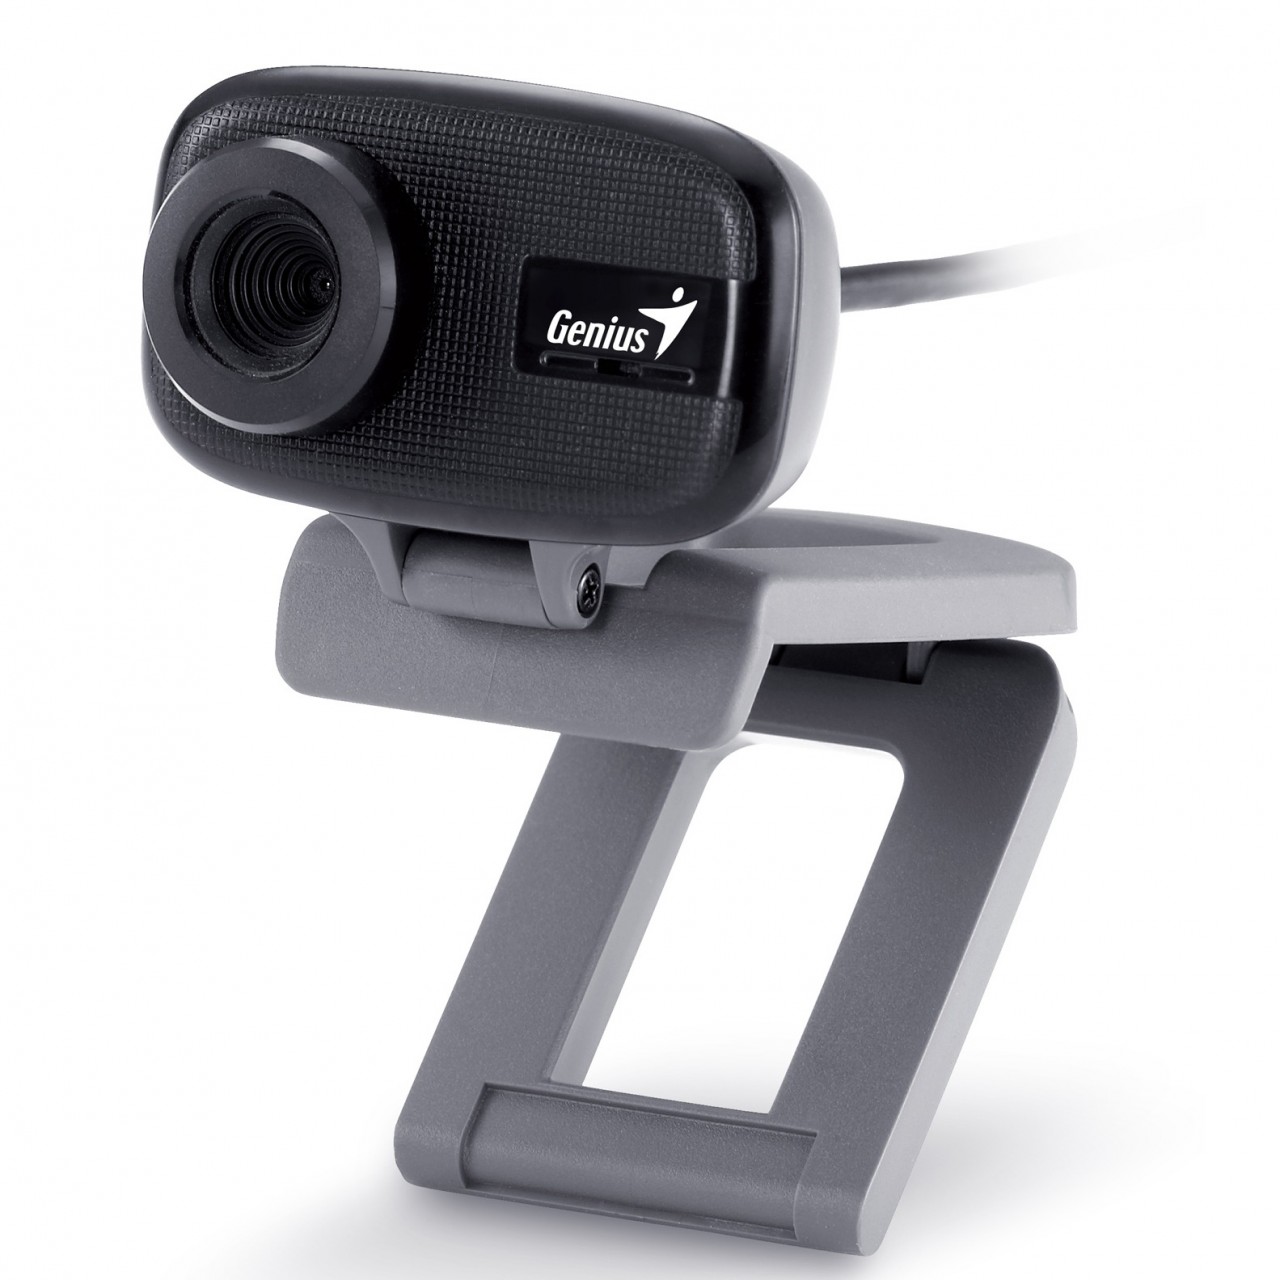 35. Genius Face cam 321 - 8MP – 3X Digital Zoom